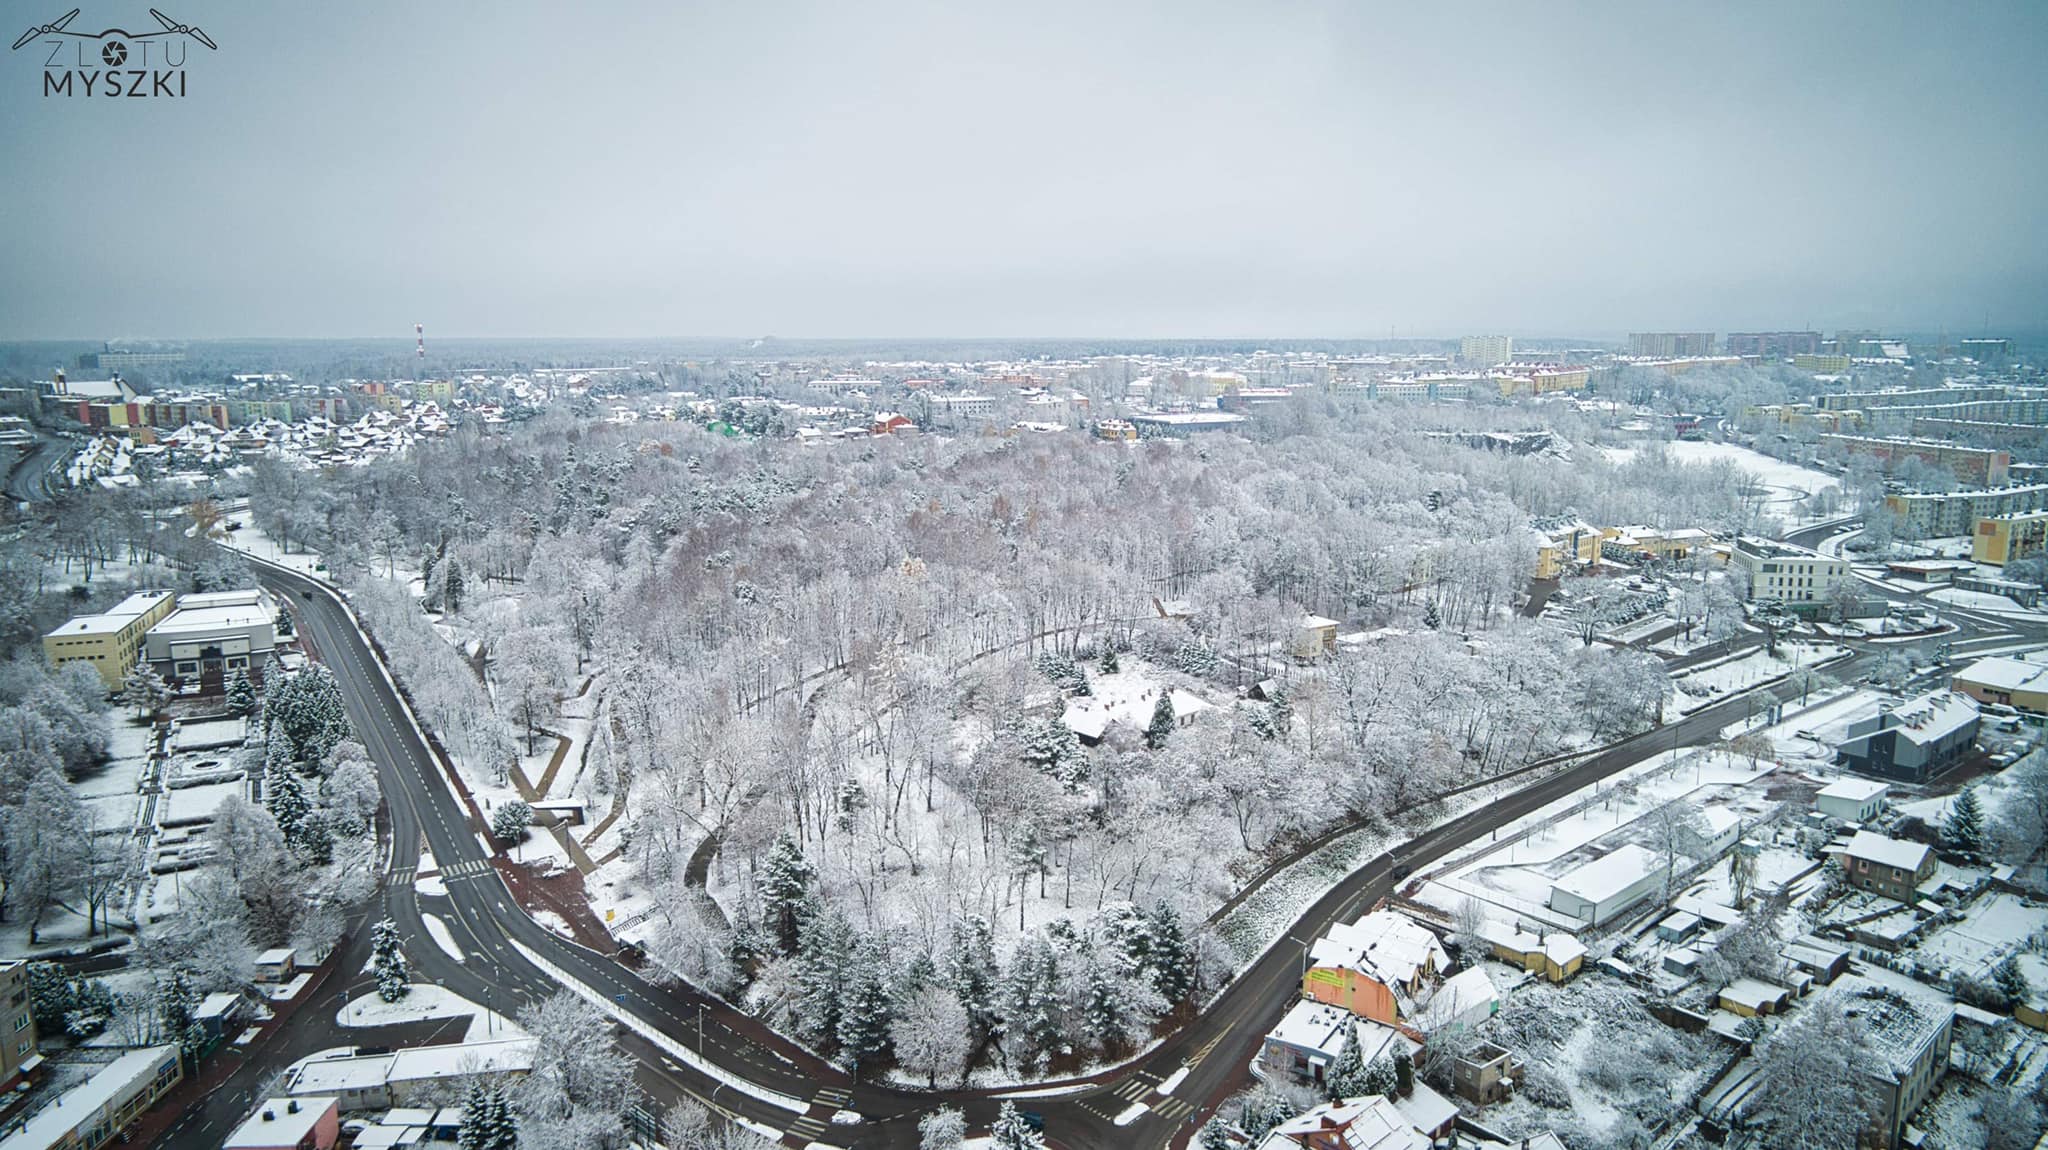 Widok zima w Starachowicach images